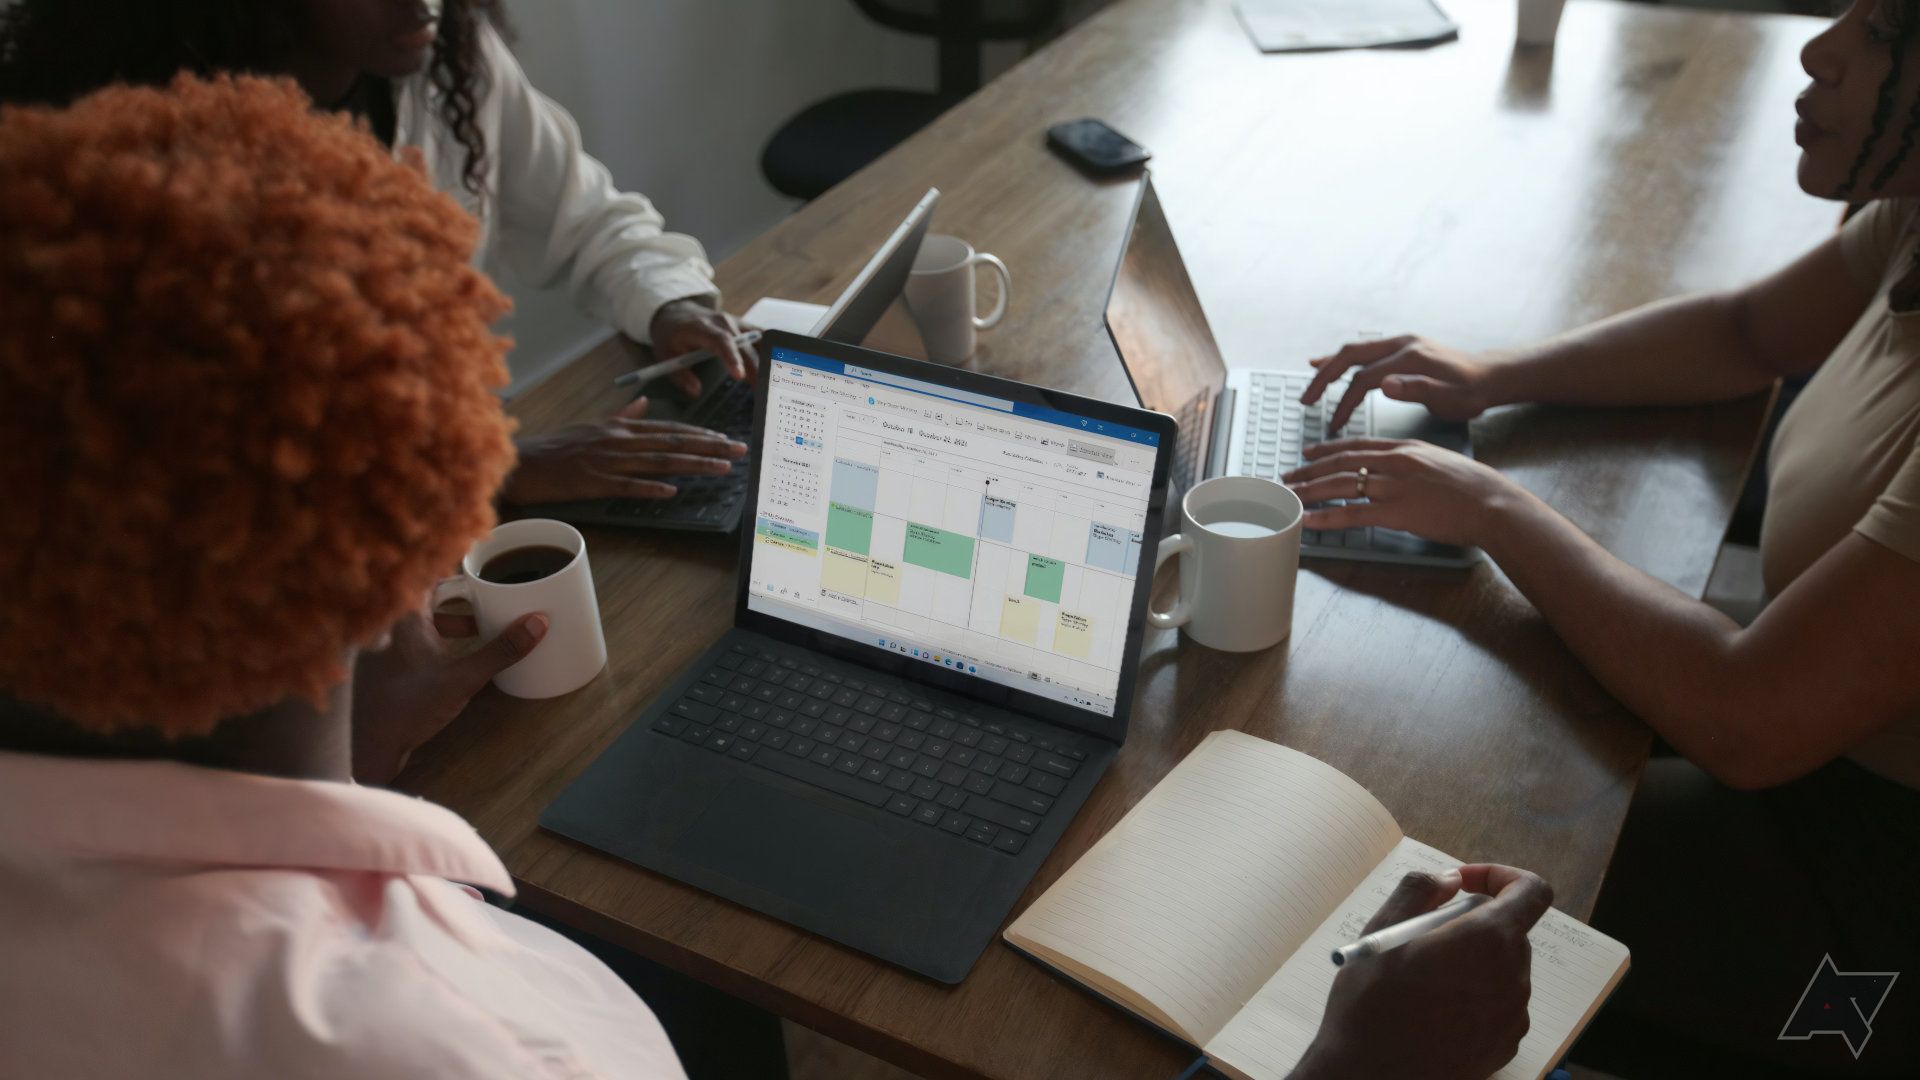 Três pessoas compartilham uma mesa para usar laptops, uma delas tem o Microsoft Excel aberto na tela.